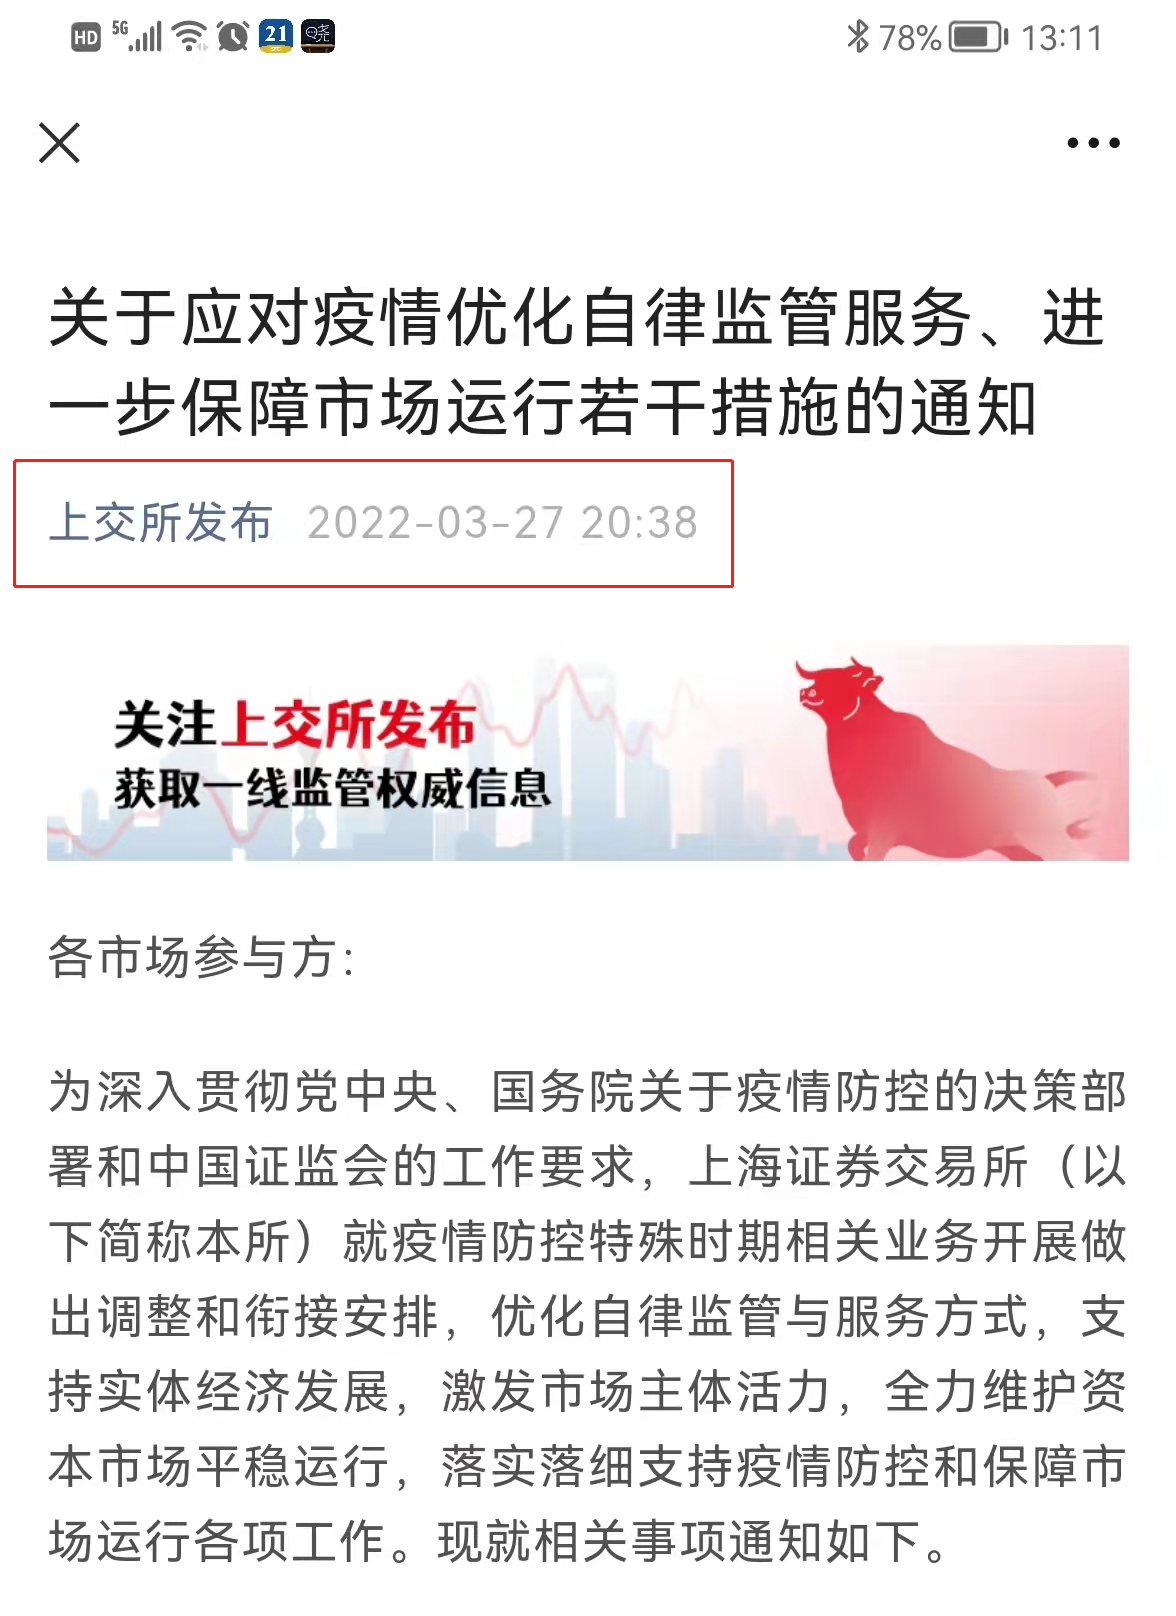 上海分区分批封控，券商基金淡定应对，连夜回公司，关键岗24小时值守